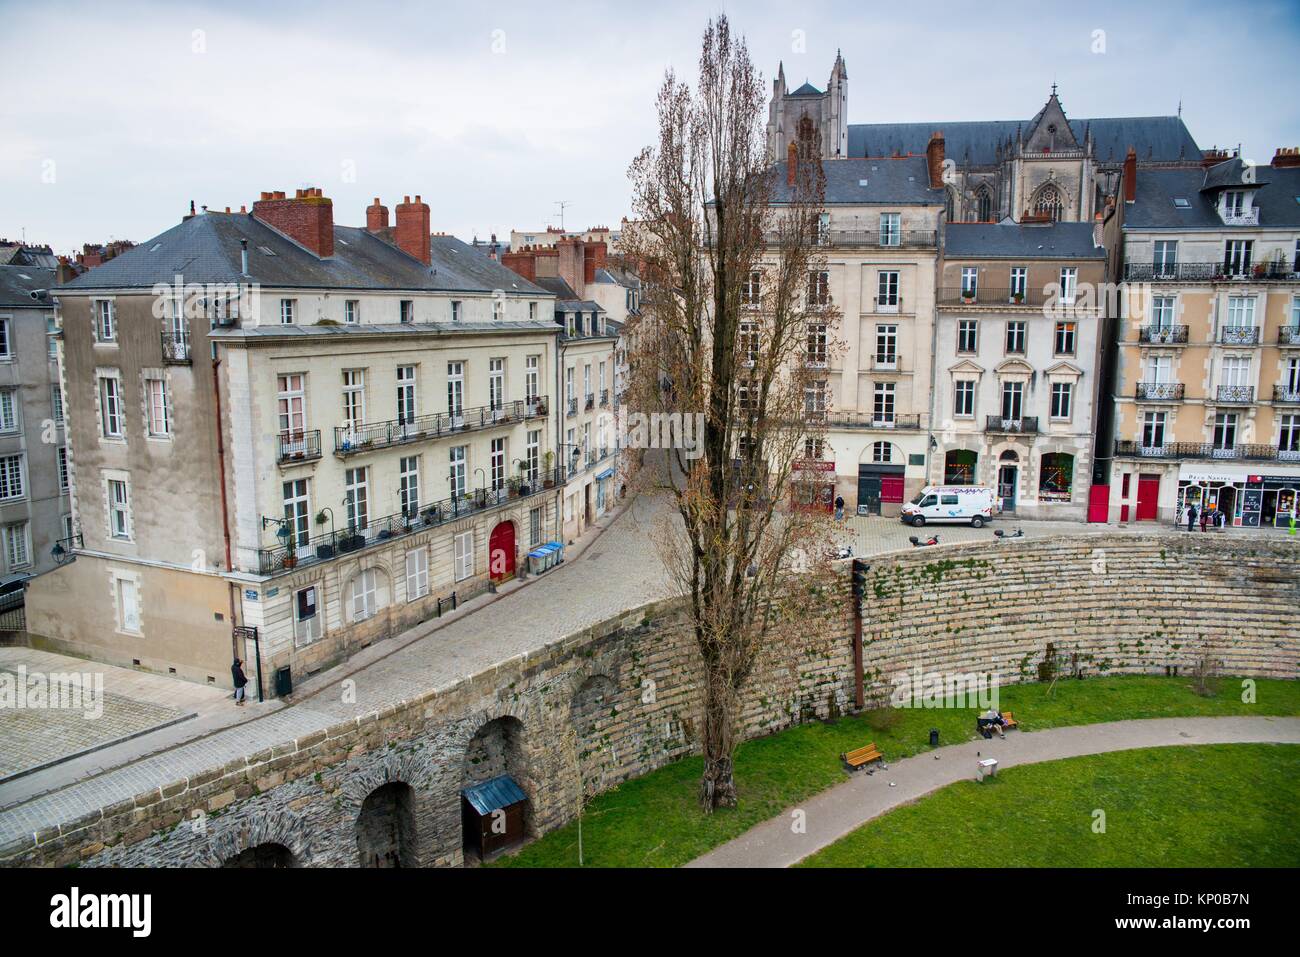 El castillo de los Duques de Bretaña es una antigua fortaleza medieval y palacio ducal situado en la ciudad de Nantes, en la región francesa de Stock Photo